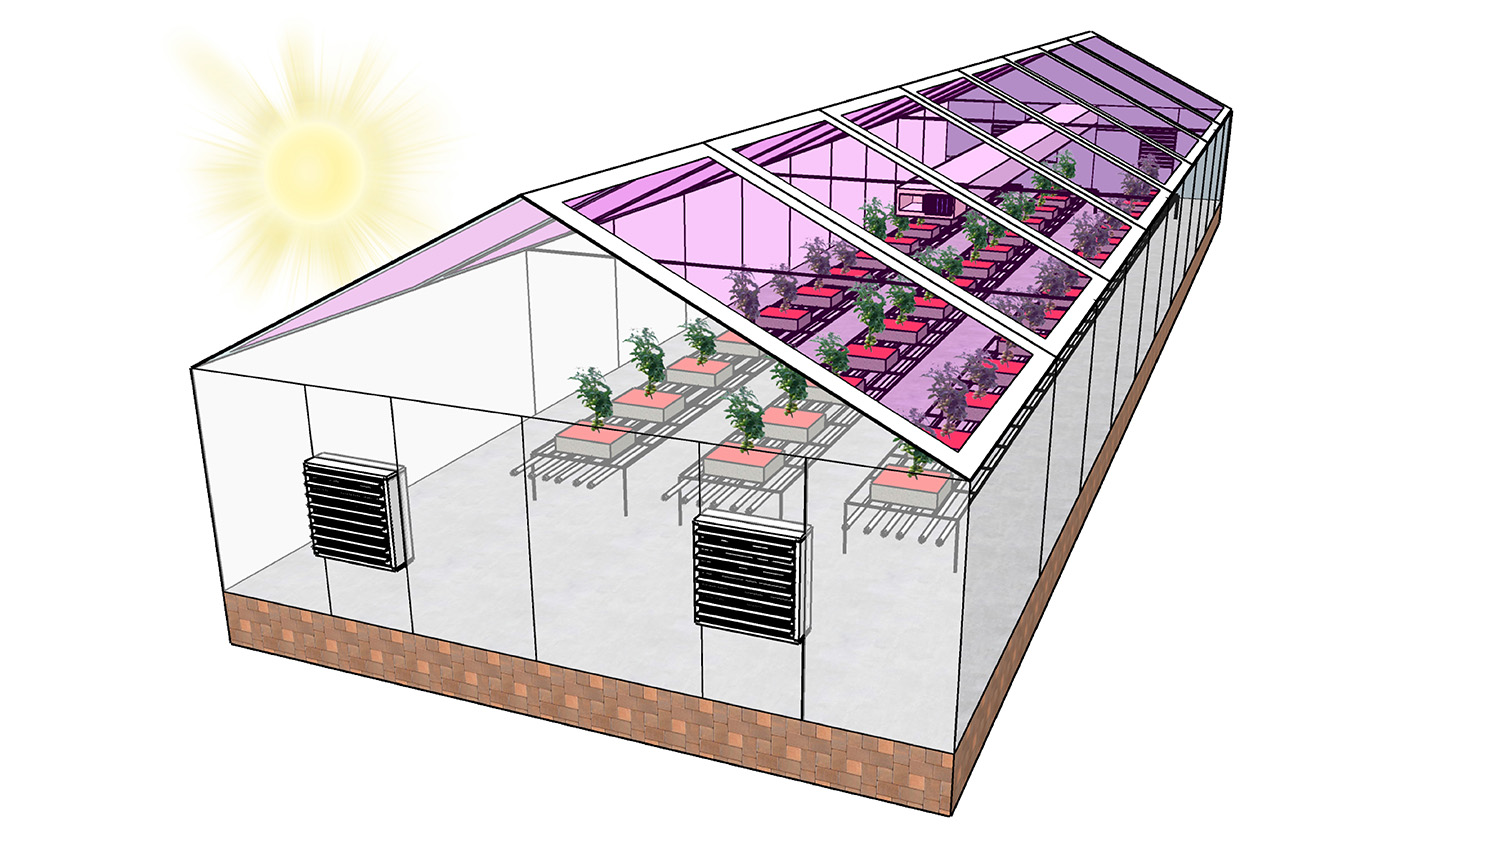 屋顶上有半透明太阳能电池板的温室图。